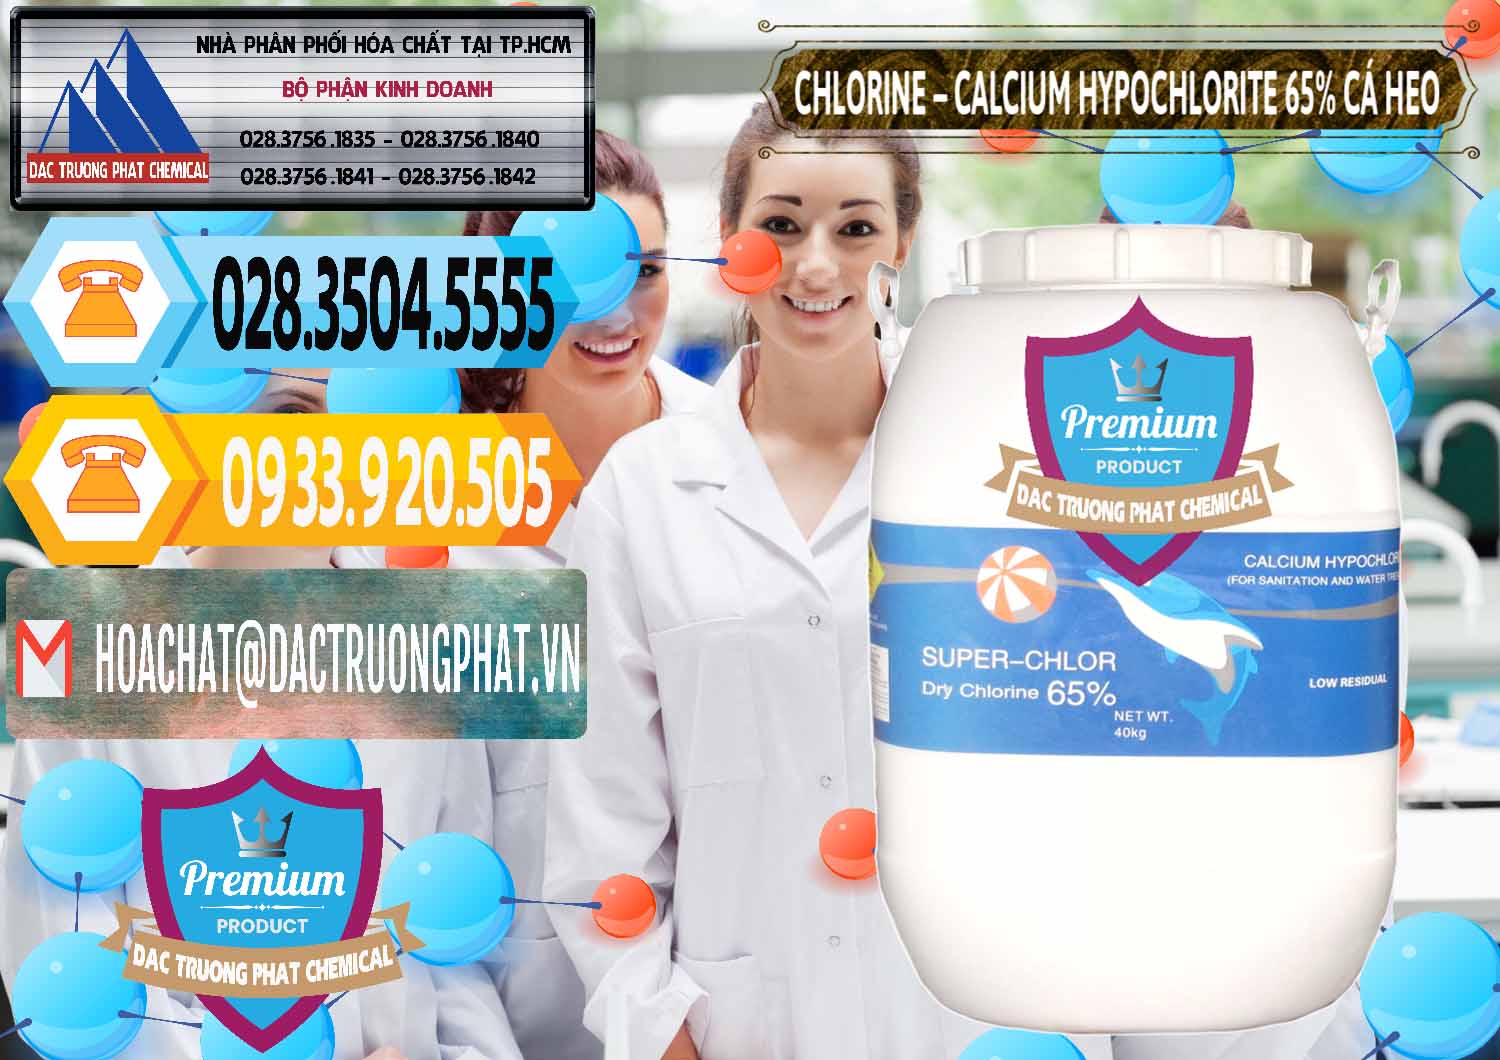 Cty bán & phân phối Clorin - Chlorine Cá Heo 65% Trung Quốc China - 0053 - Cty chuyên phân phối ( cung ứng ) hóa chất tại TP.HCM - hoachattayrua.net